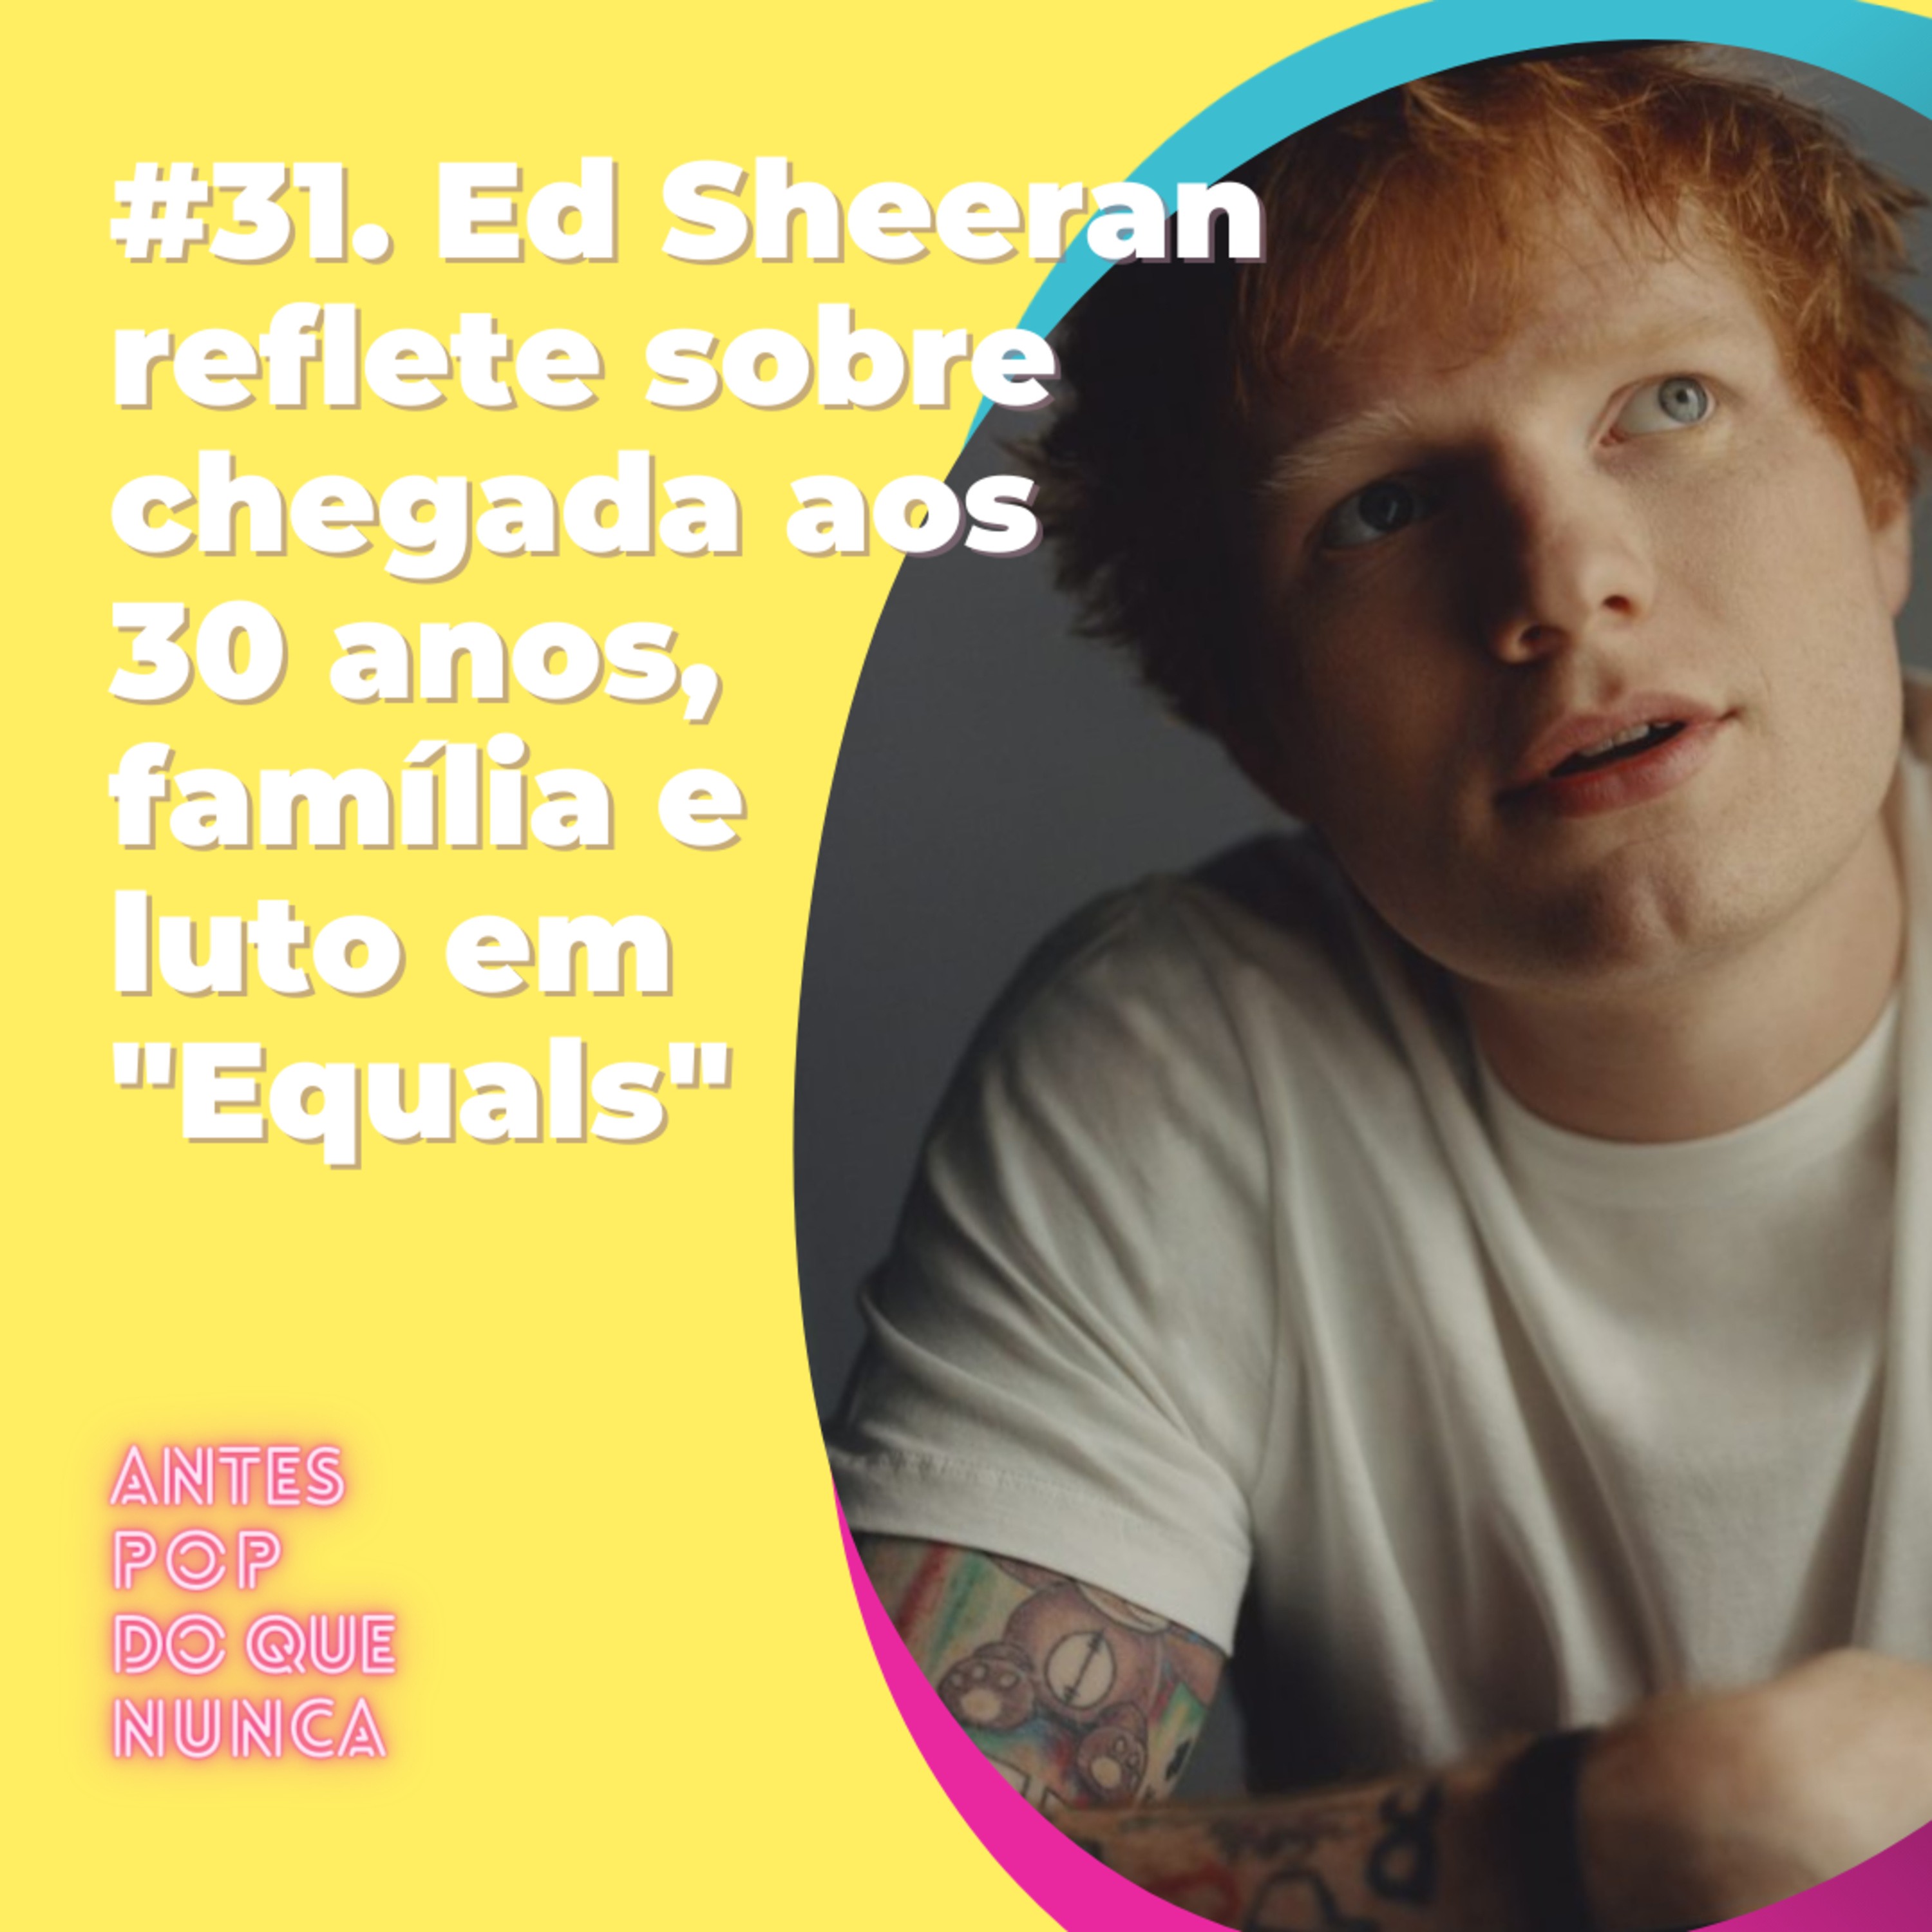 #31. Ed Sheeran reflete sobre chegada aos 30, família e luto em 